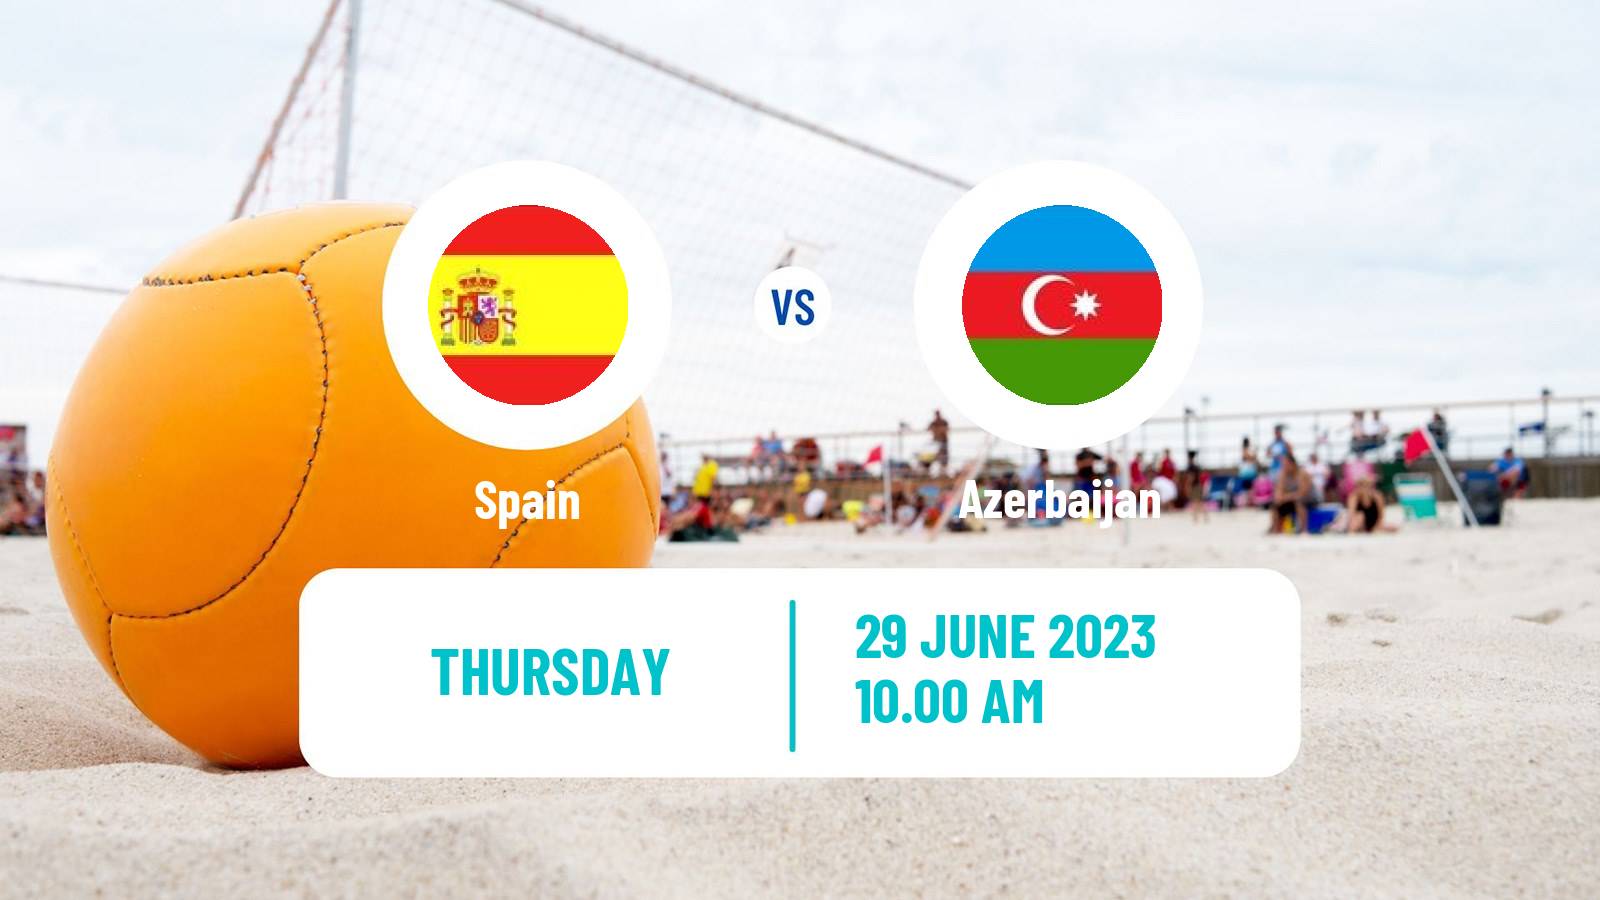 Beach soccer European Games Spain - Azerbaijan